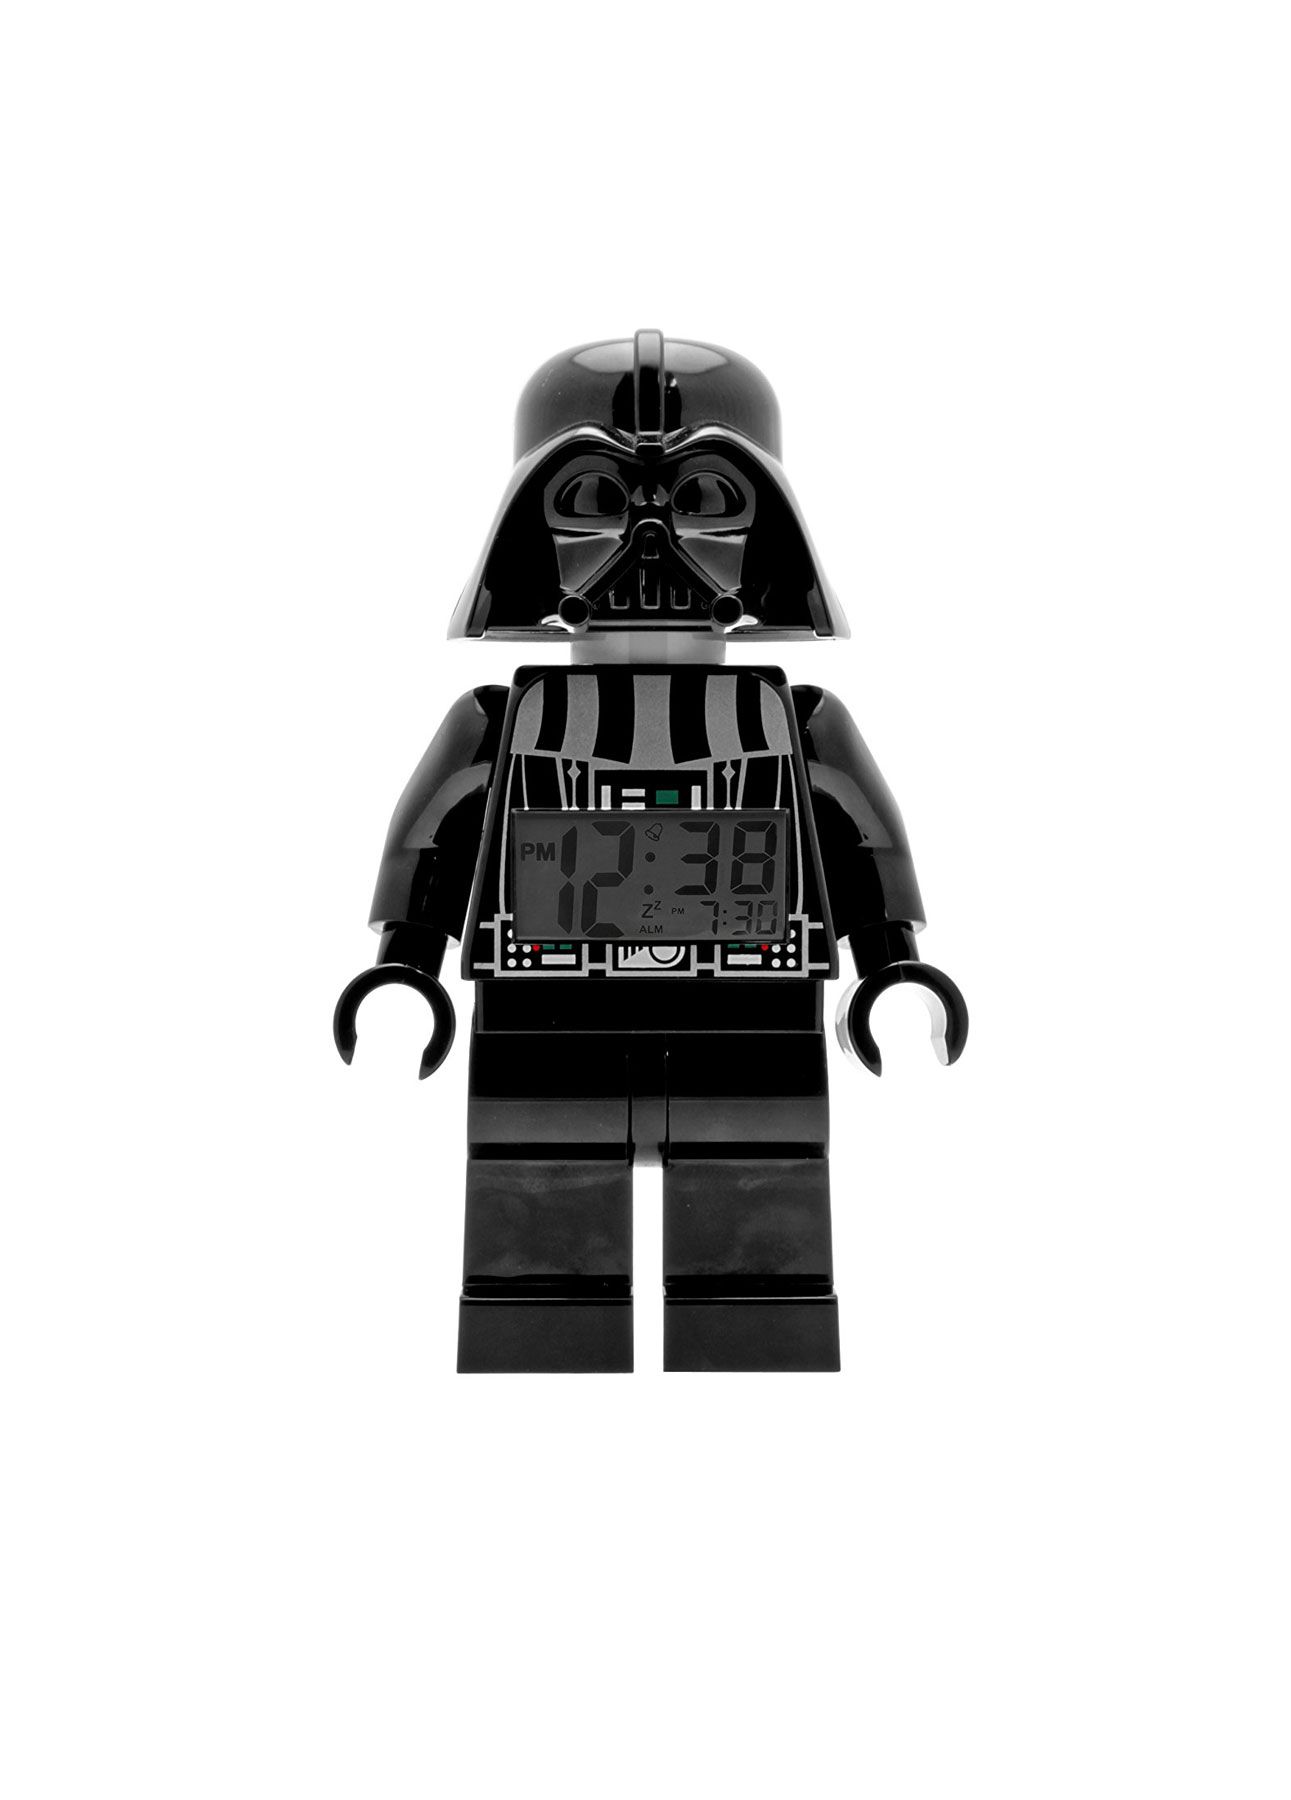 Lego Star Wars Darth Vader Light Up Alarm Clock